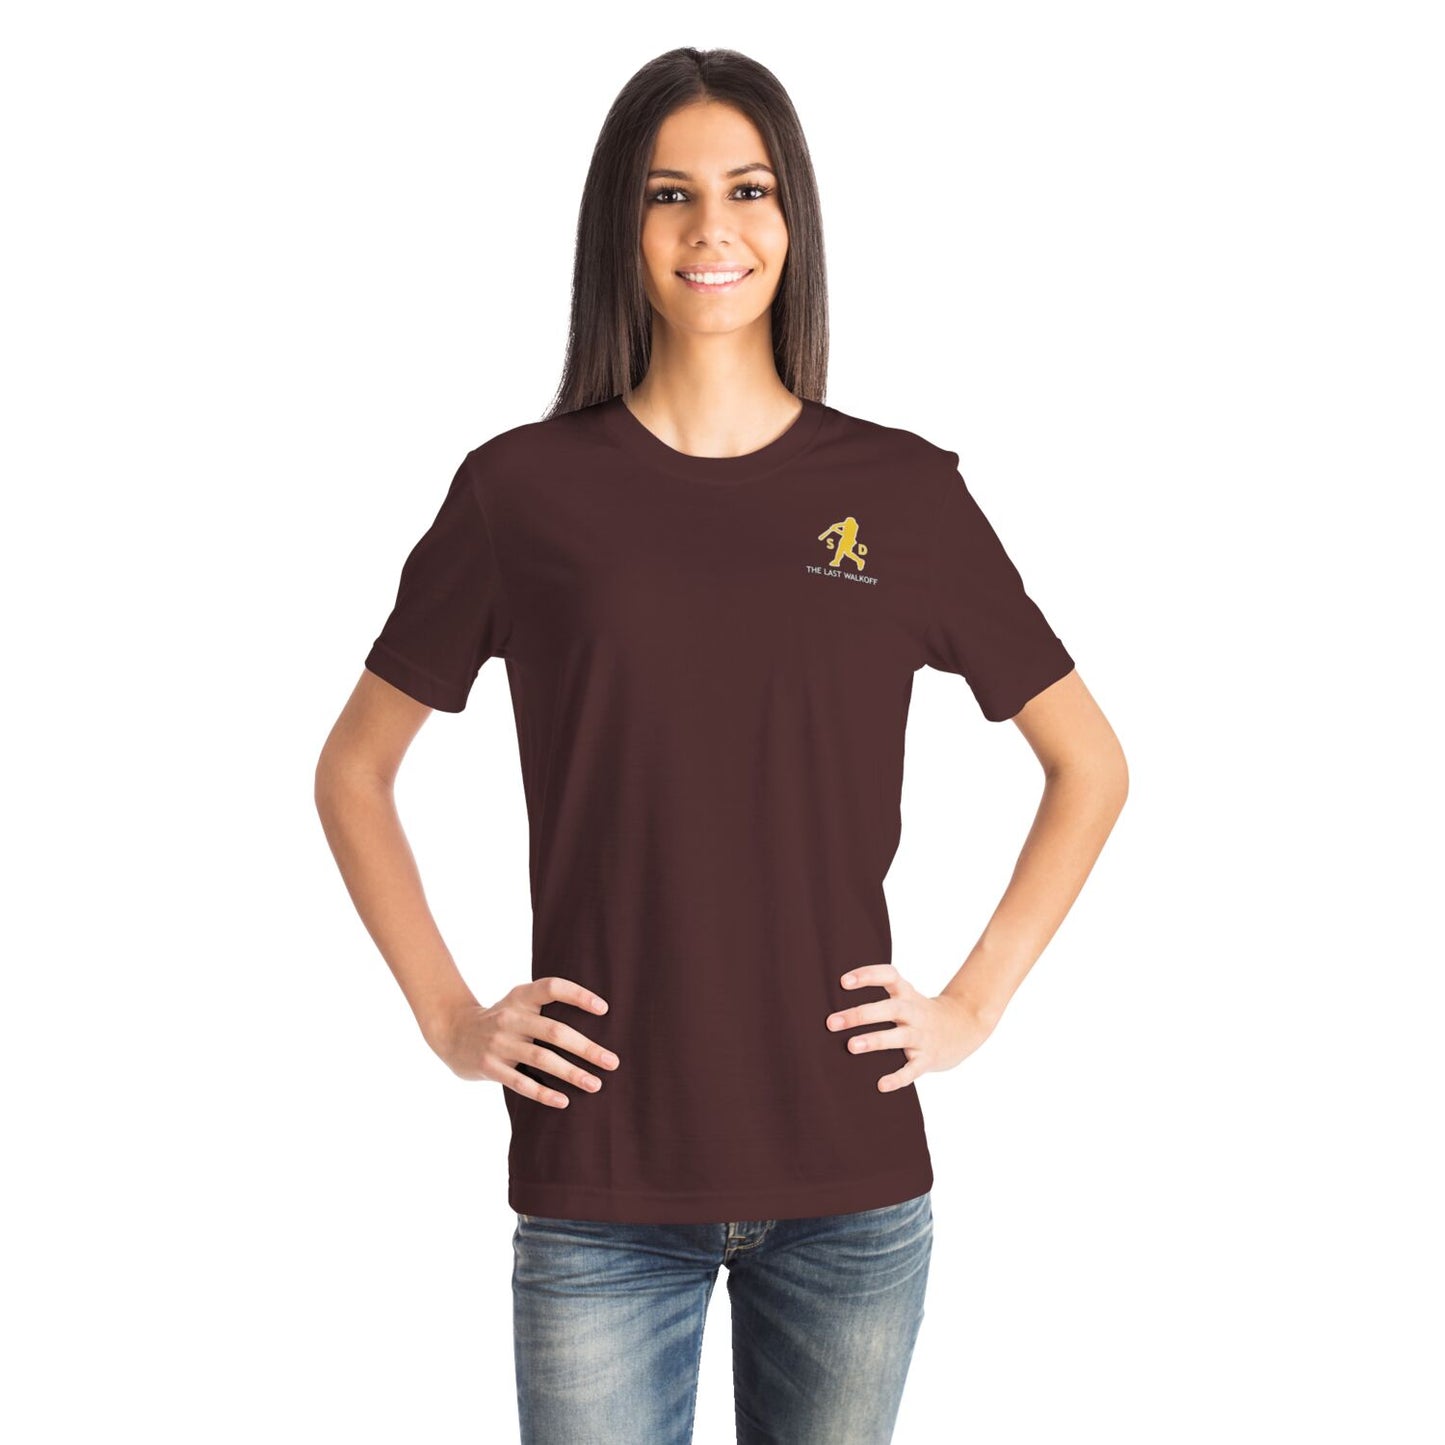 "The .394 Swing" Brown T-Shirt Coronado SD